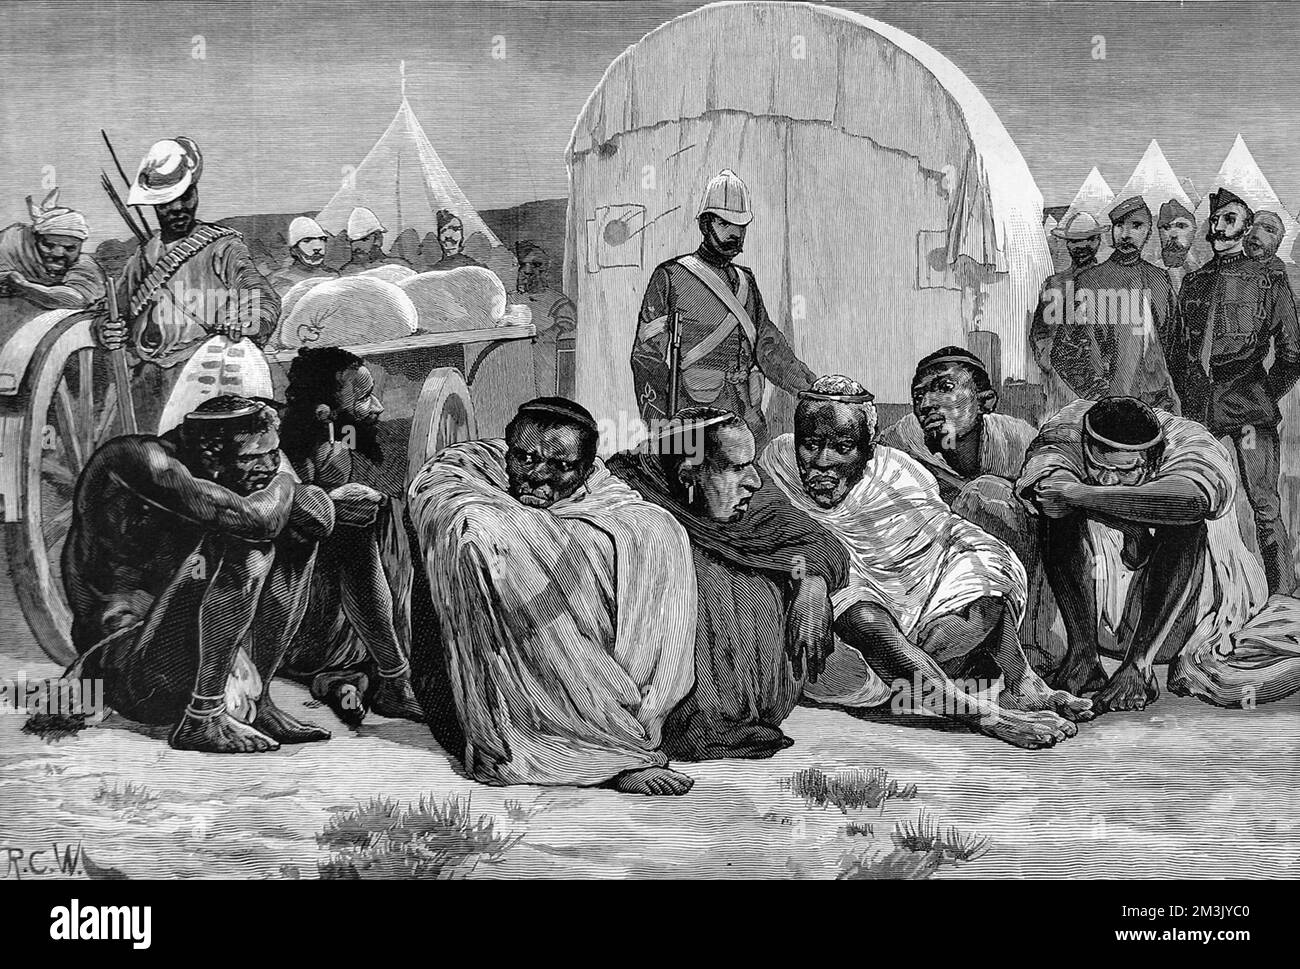 Gli anziani di Zulu si sono seduti nel campo dell'esercito britannico in attesa di negoziare la fine delle ostilità nelle guerre di Zulu. Le truppe e le tende britanniche sono viste sullo sfondo. Data: 1879 Foto Stock